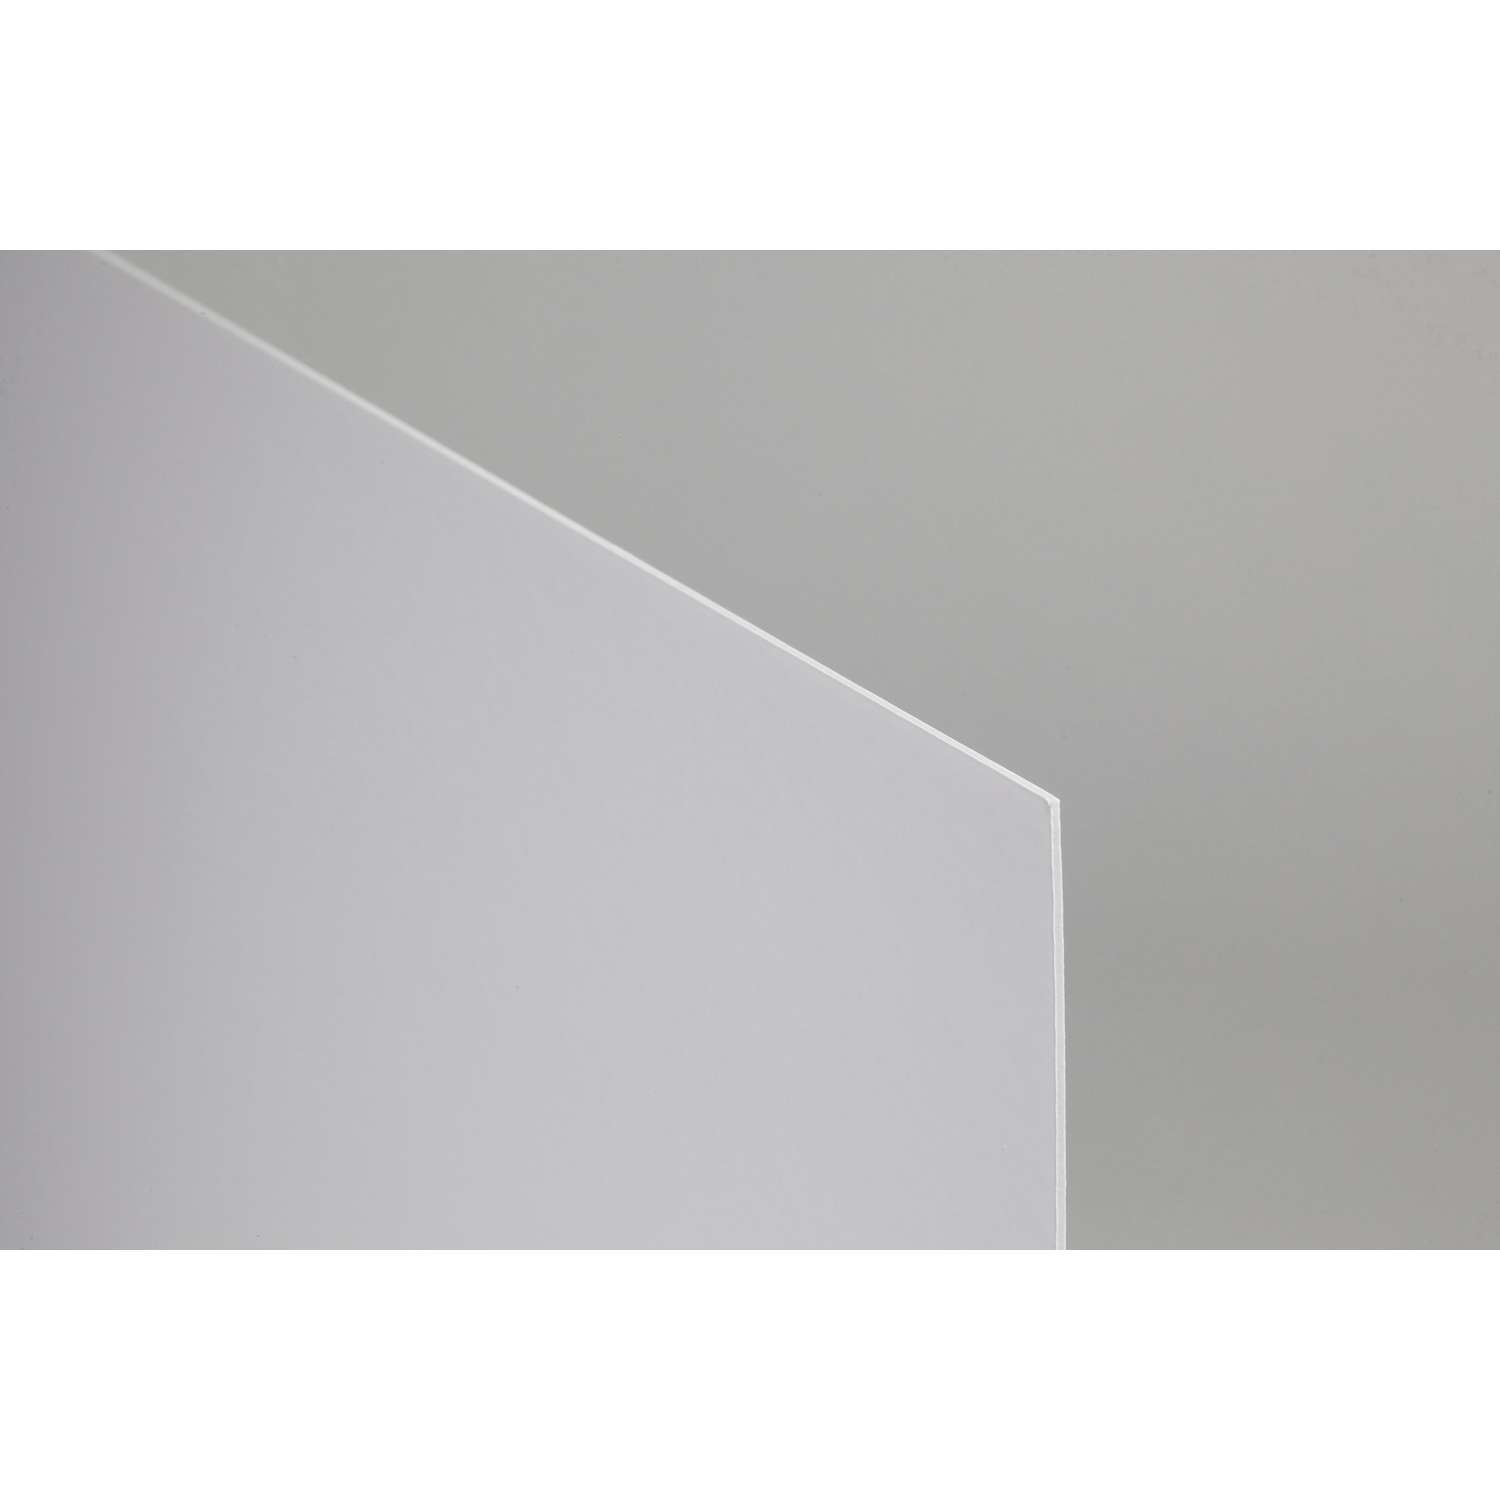 canson carton plume blanc feuille 5 mm 70 x 100 - denis beaux arts